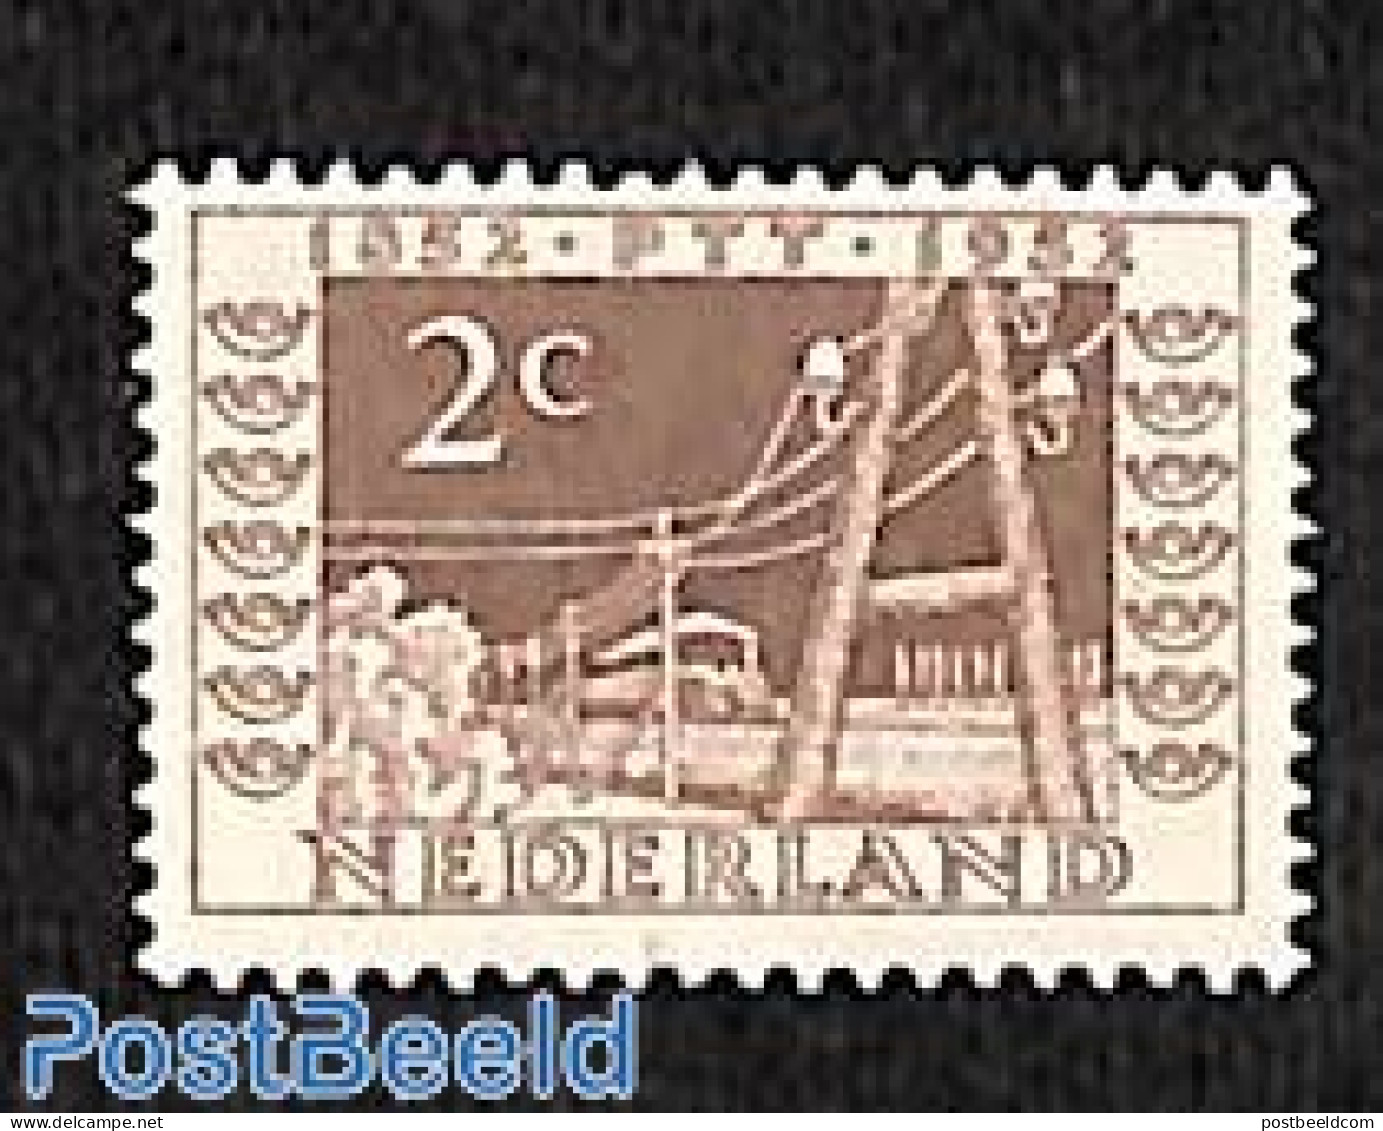 Netherlands 1952 2c Train Around 1852, Unused (hinged), Transport - Railways - Unused Stamps